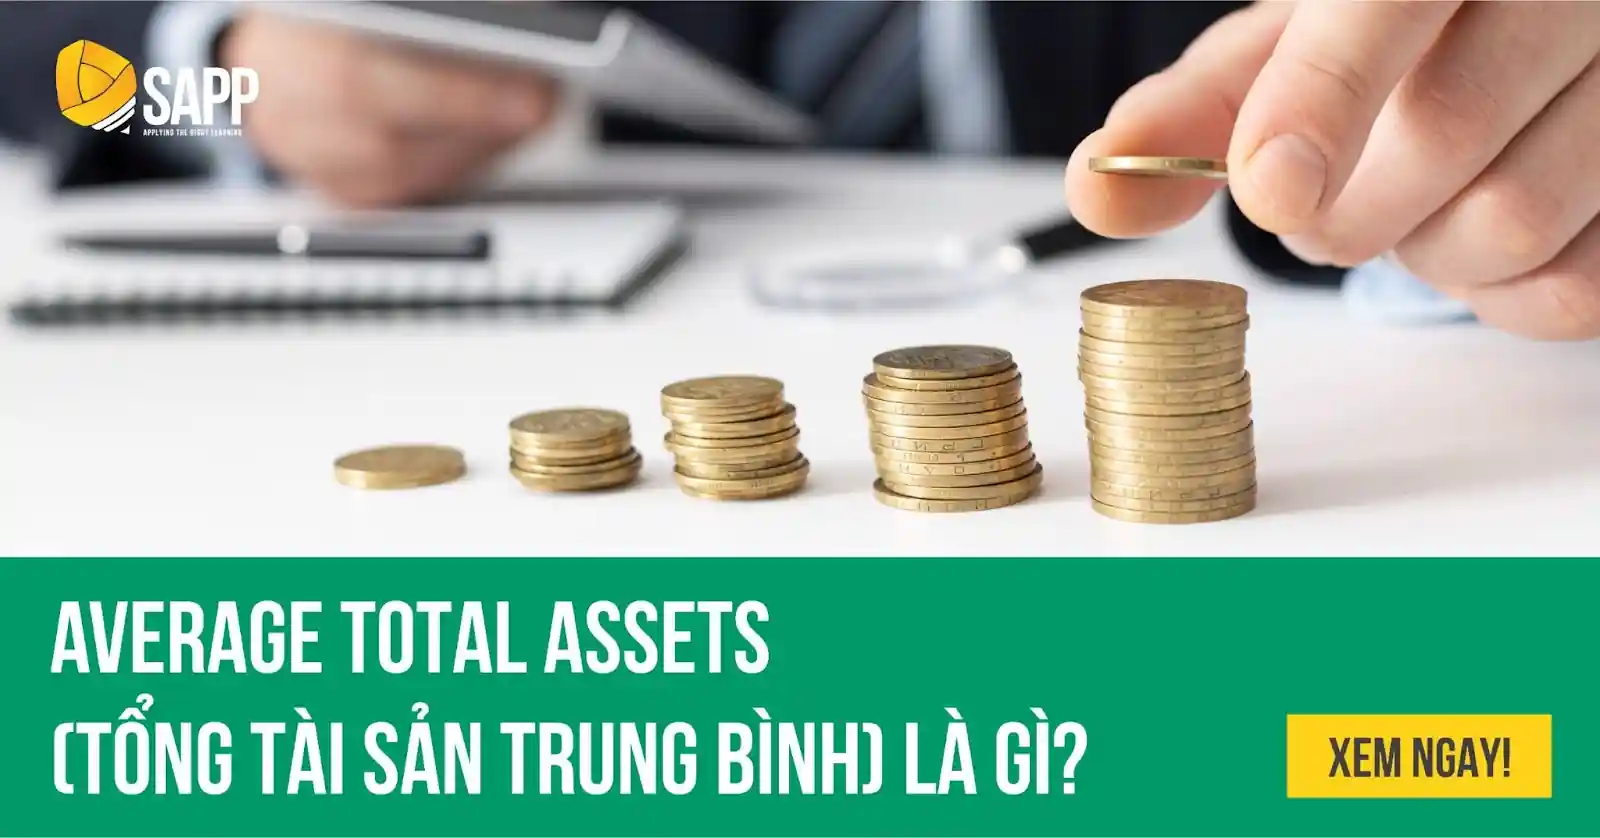 Average Total Assets (Tổng tài sản trung bình) là gì?